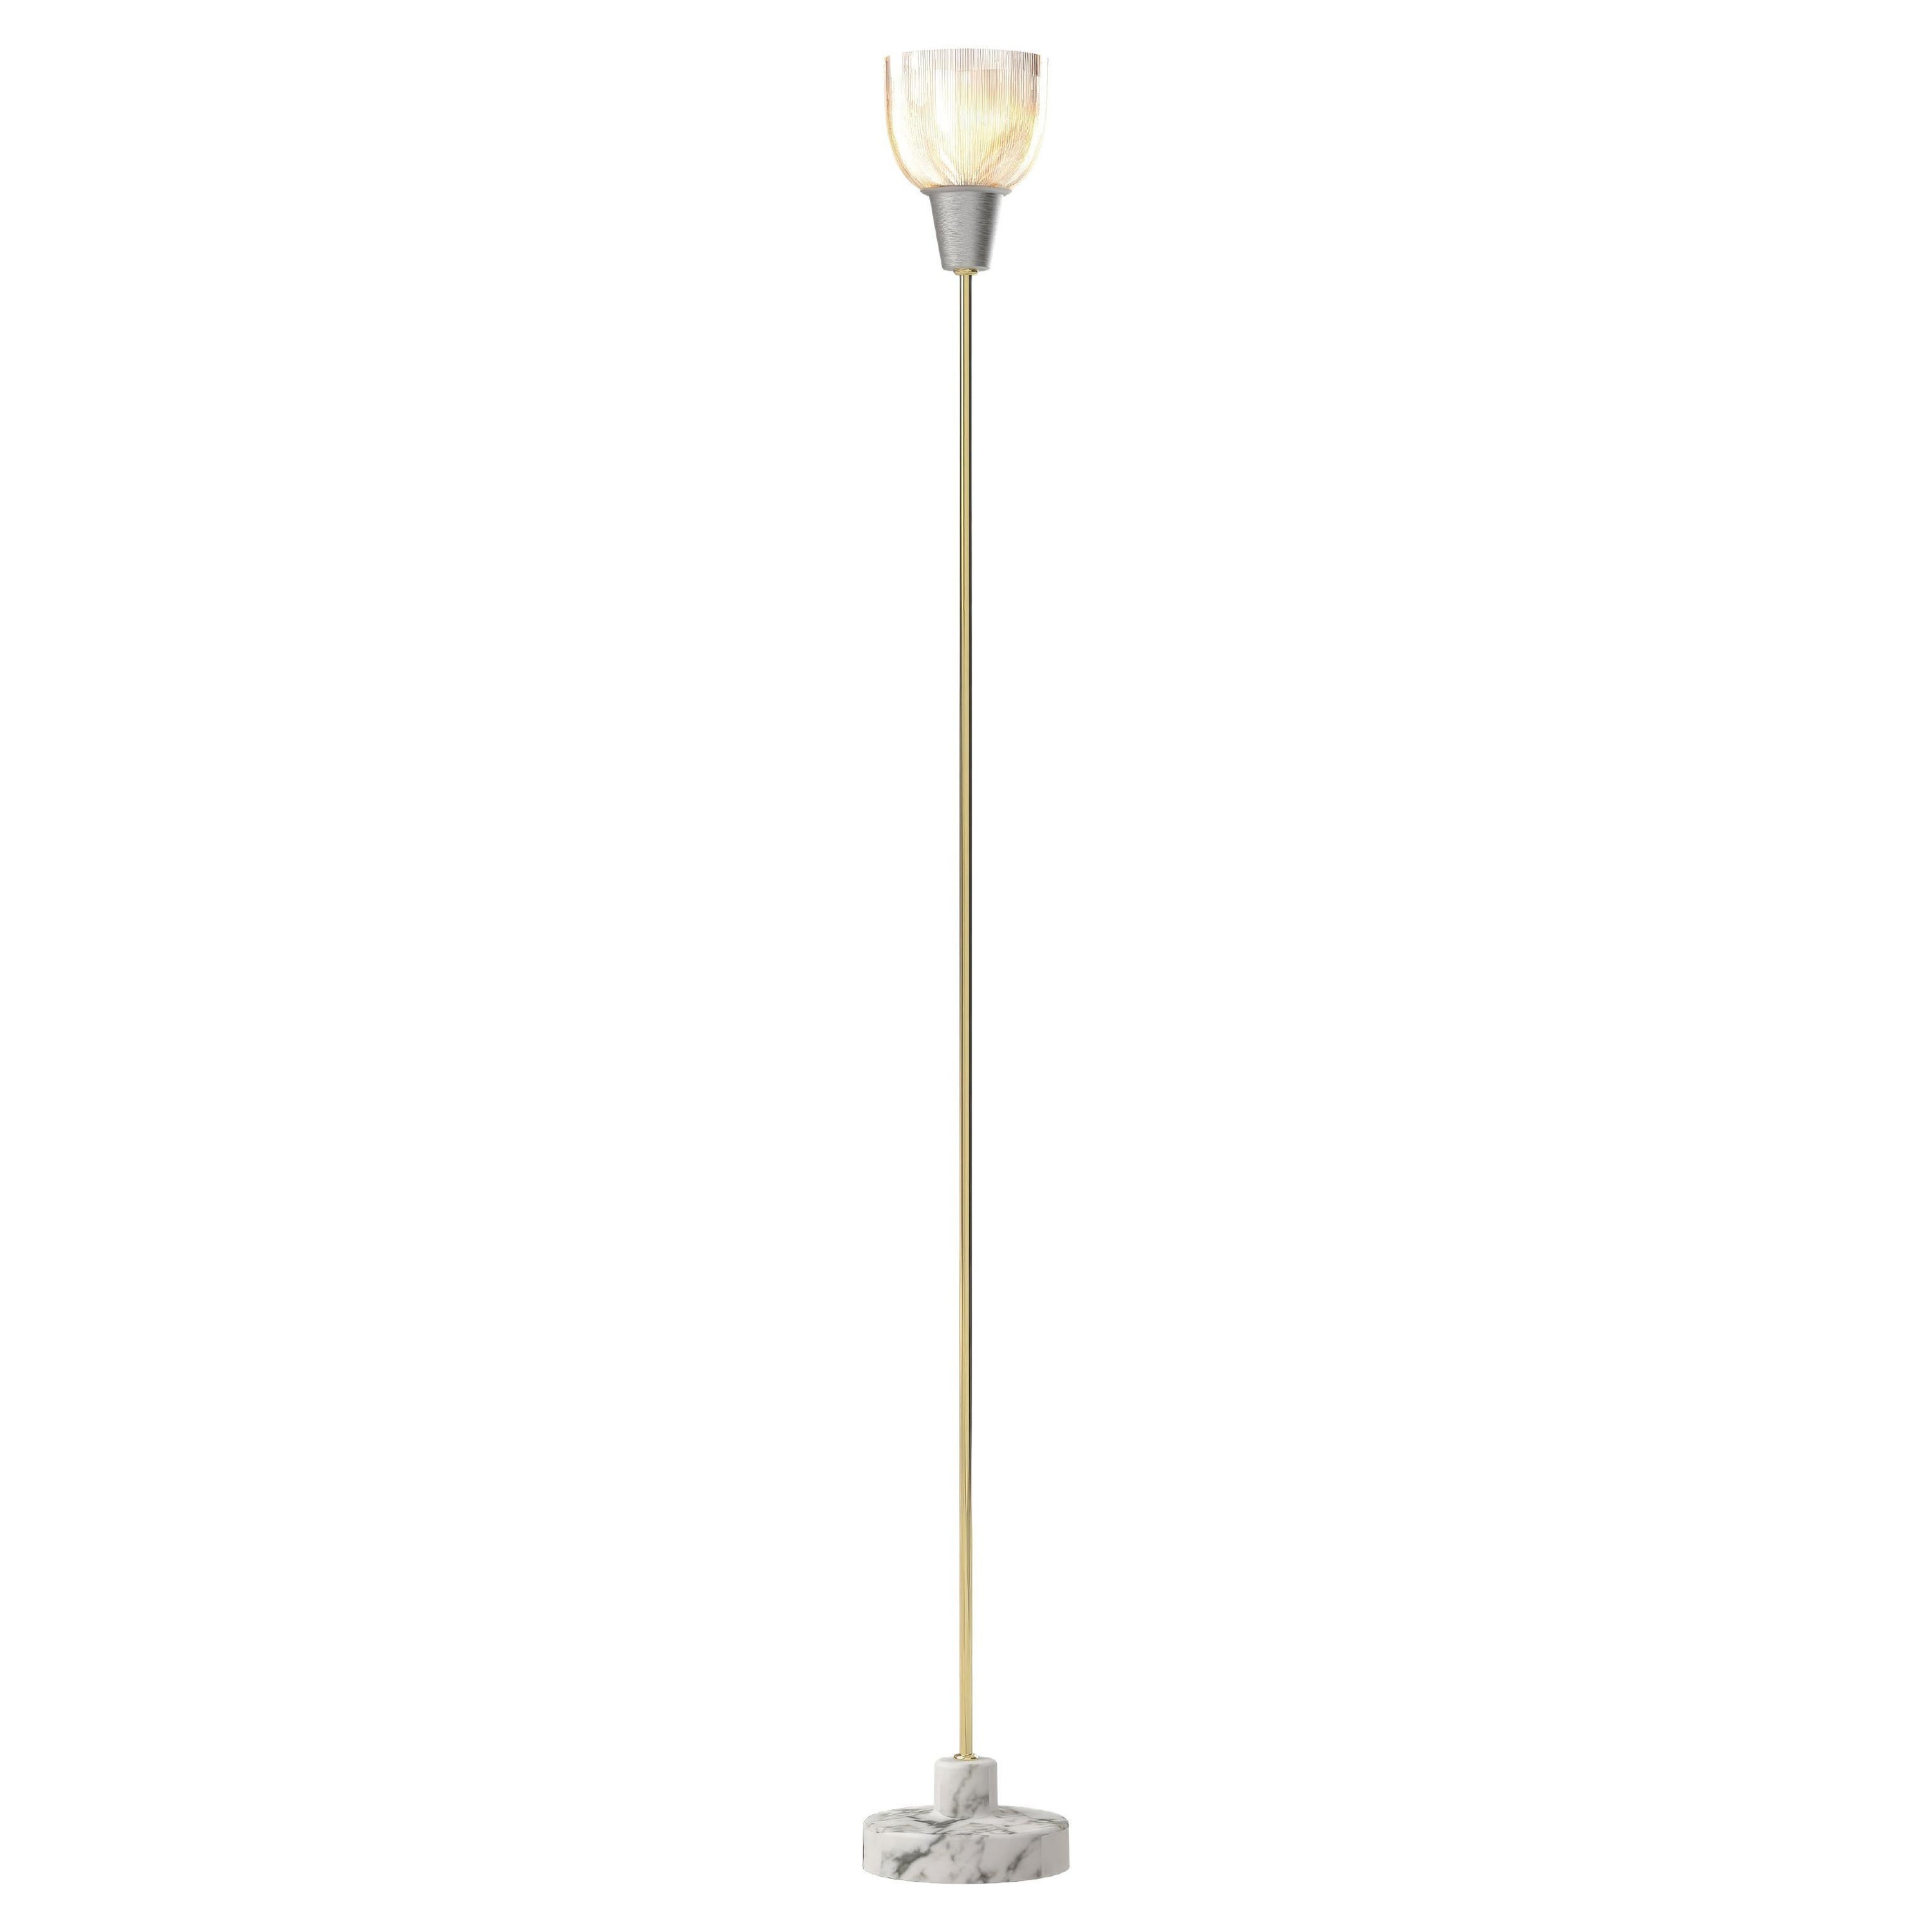 Ignazio Gardella 'Coppa Aperta Piantana' Floor Lamp in White Marble and Brass For Sale